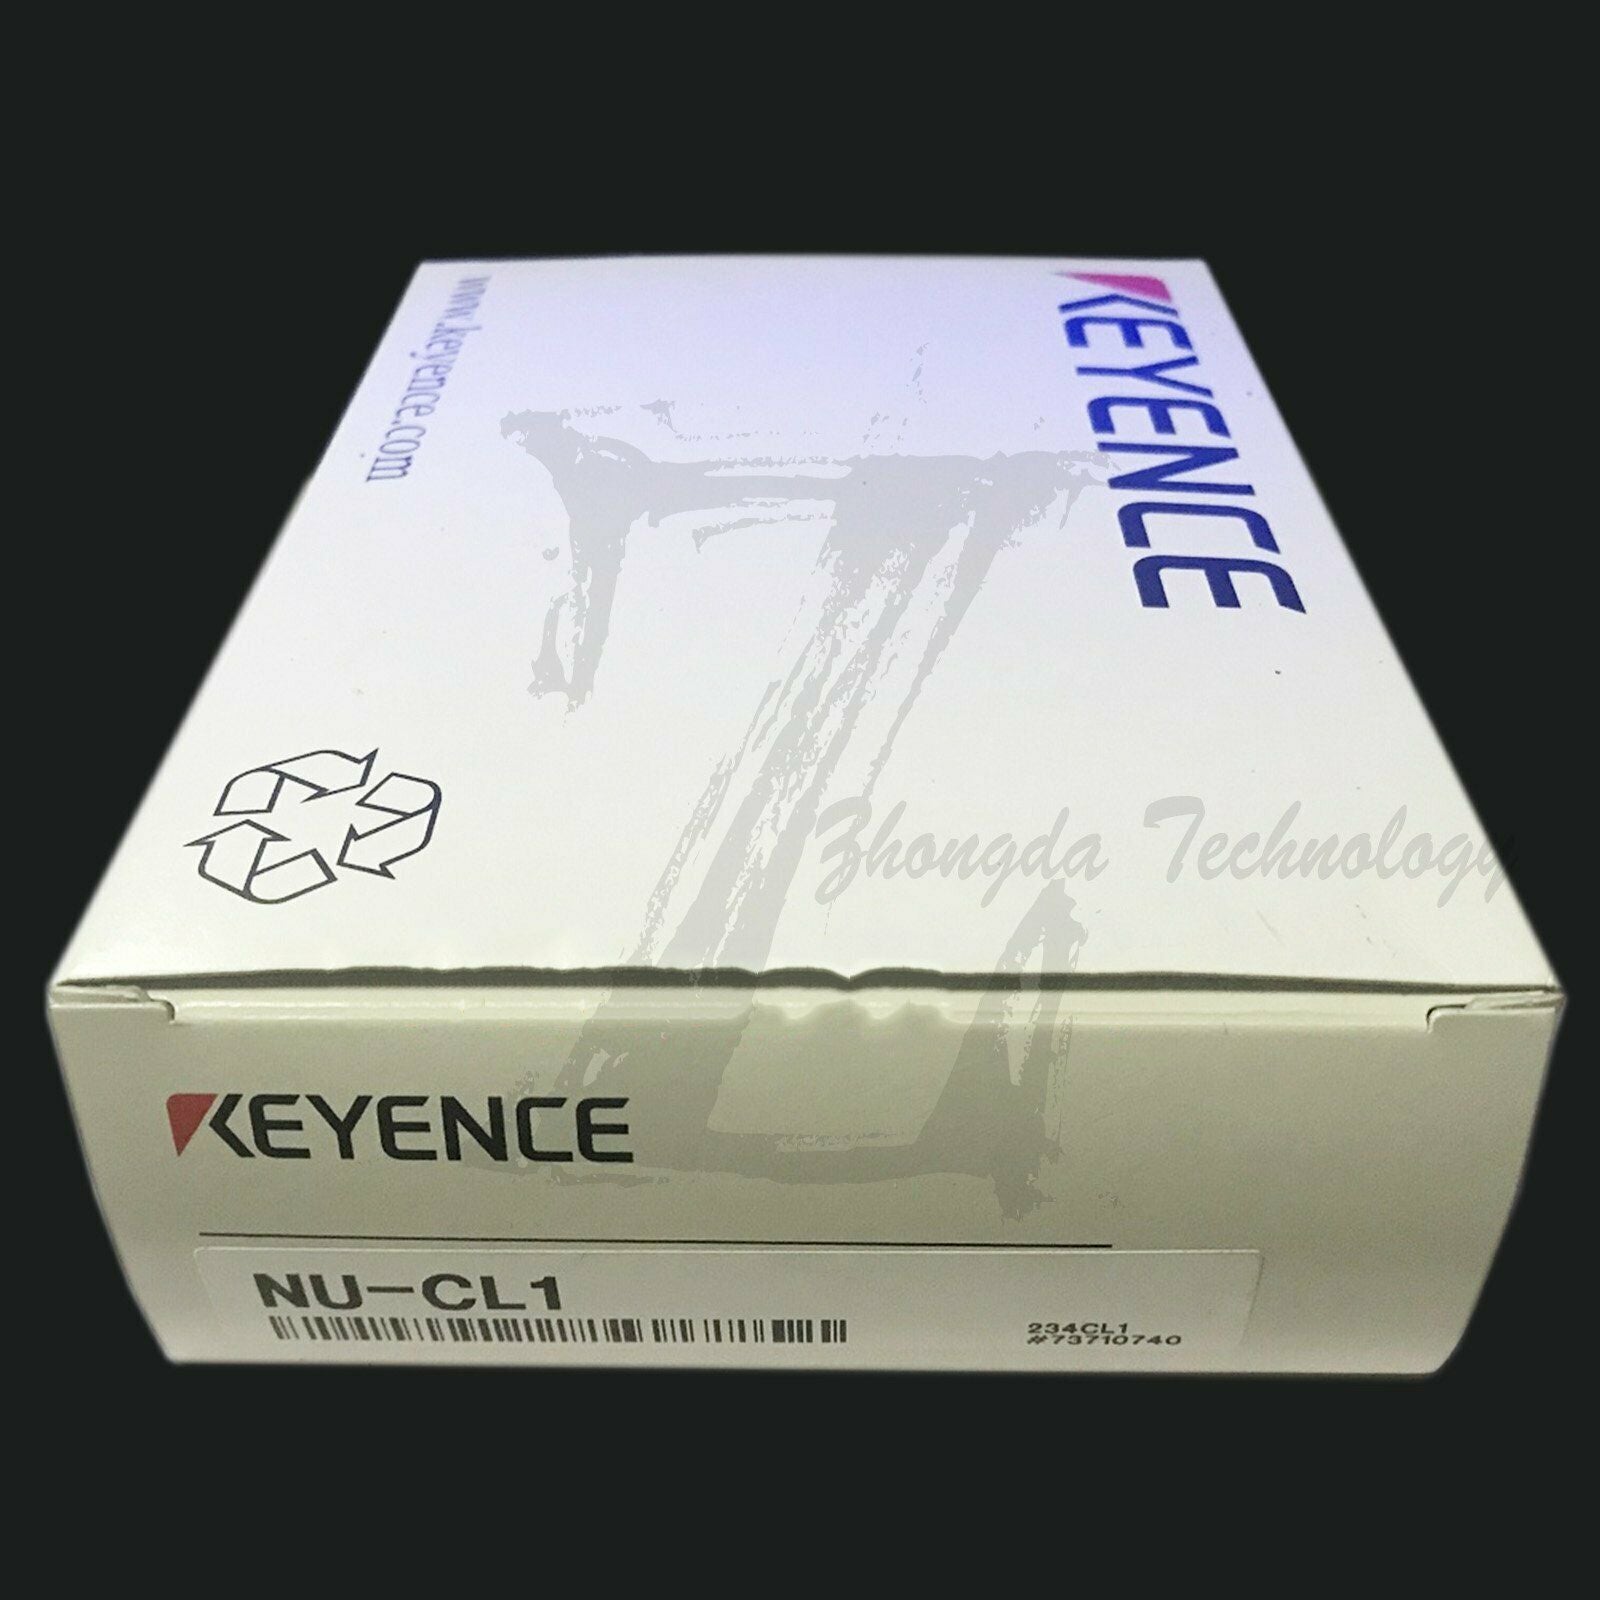 NEW IN BOX 1PCS KEYENCE NU-CL1 NUCL1